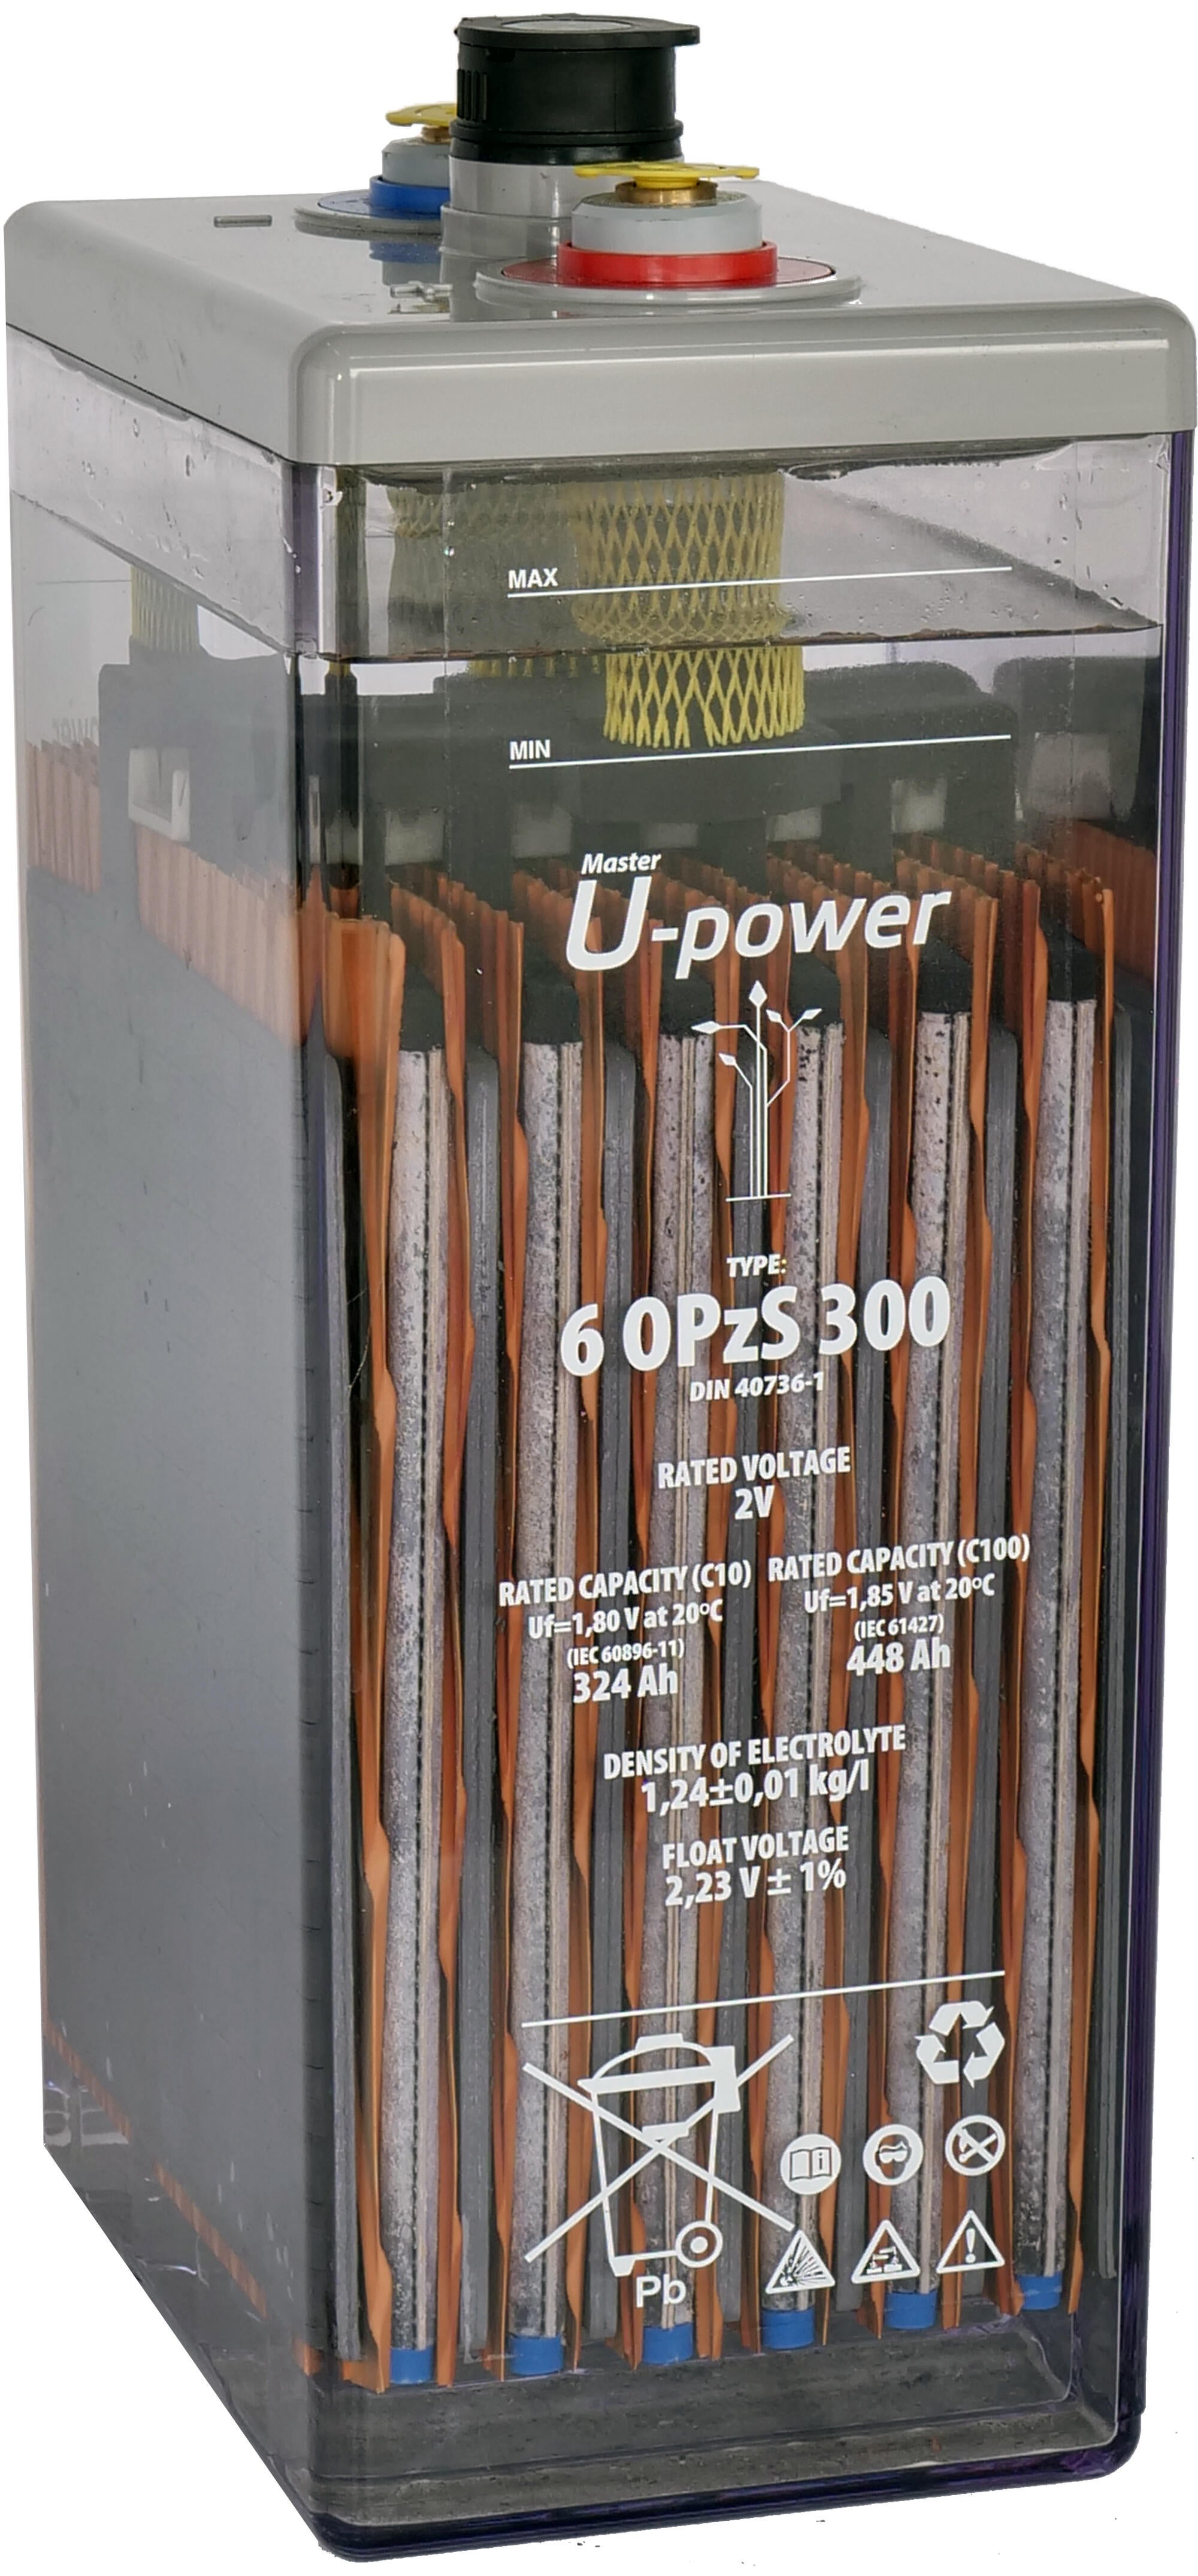 Batería solar estacionarial u-power 6 opzv 300 2v c100 505ah